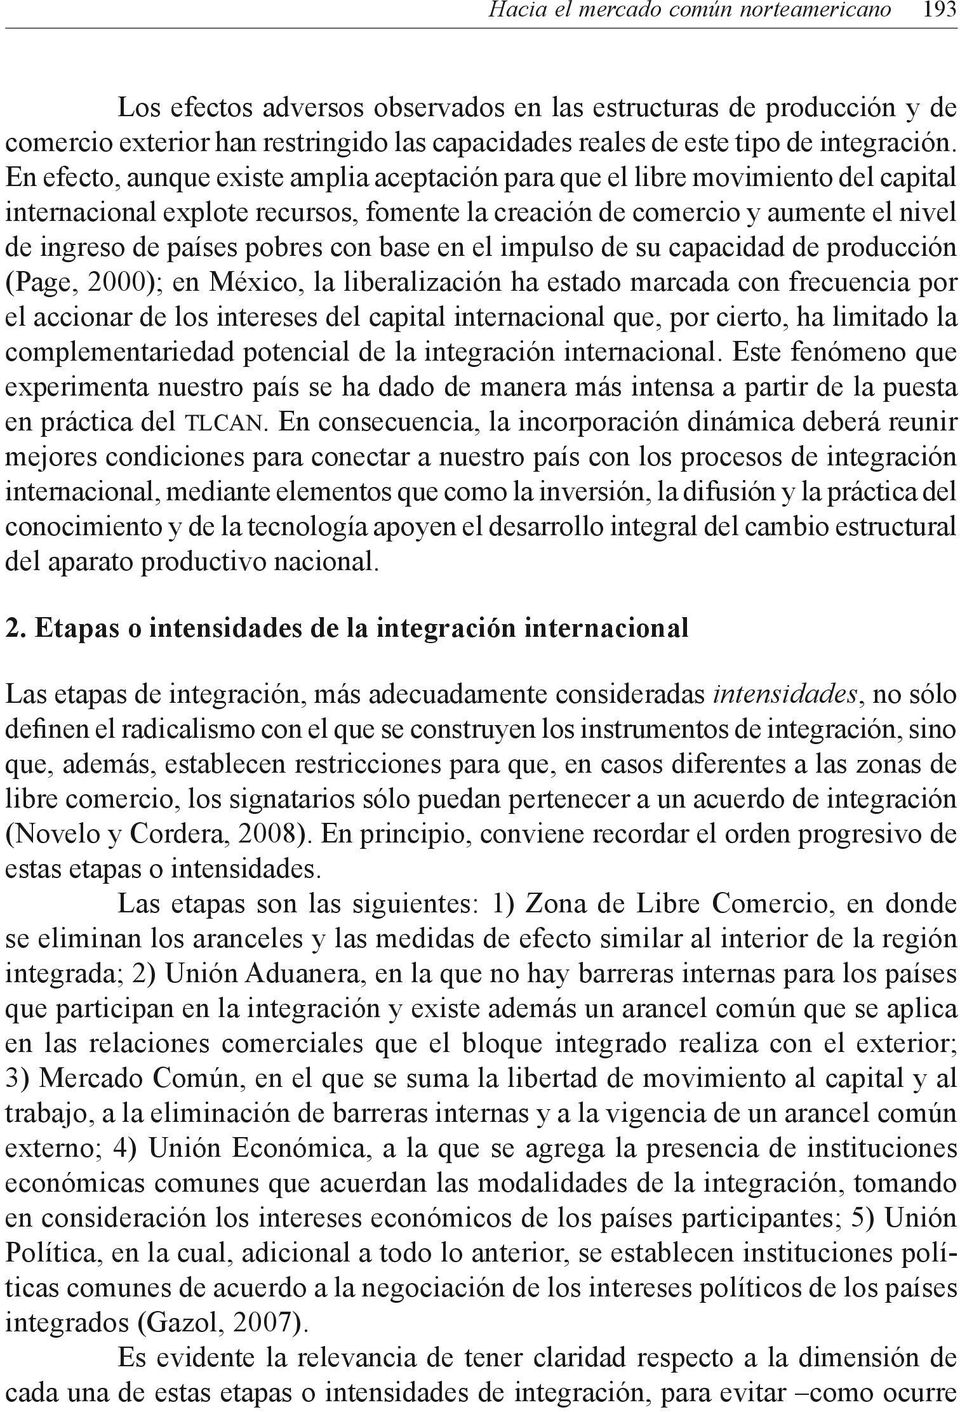 base en el impulso de su capacidad de producción (Page, 2000); en México, la liberalización ha estado marcada con frecuencia por el accionar de los intereses del capital internacional que, por